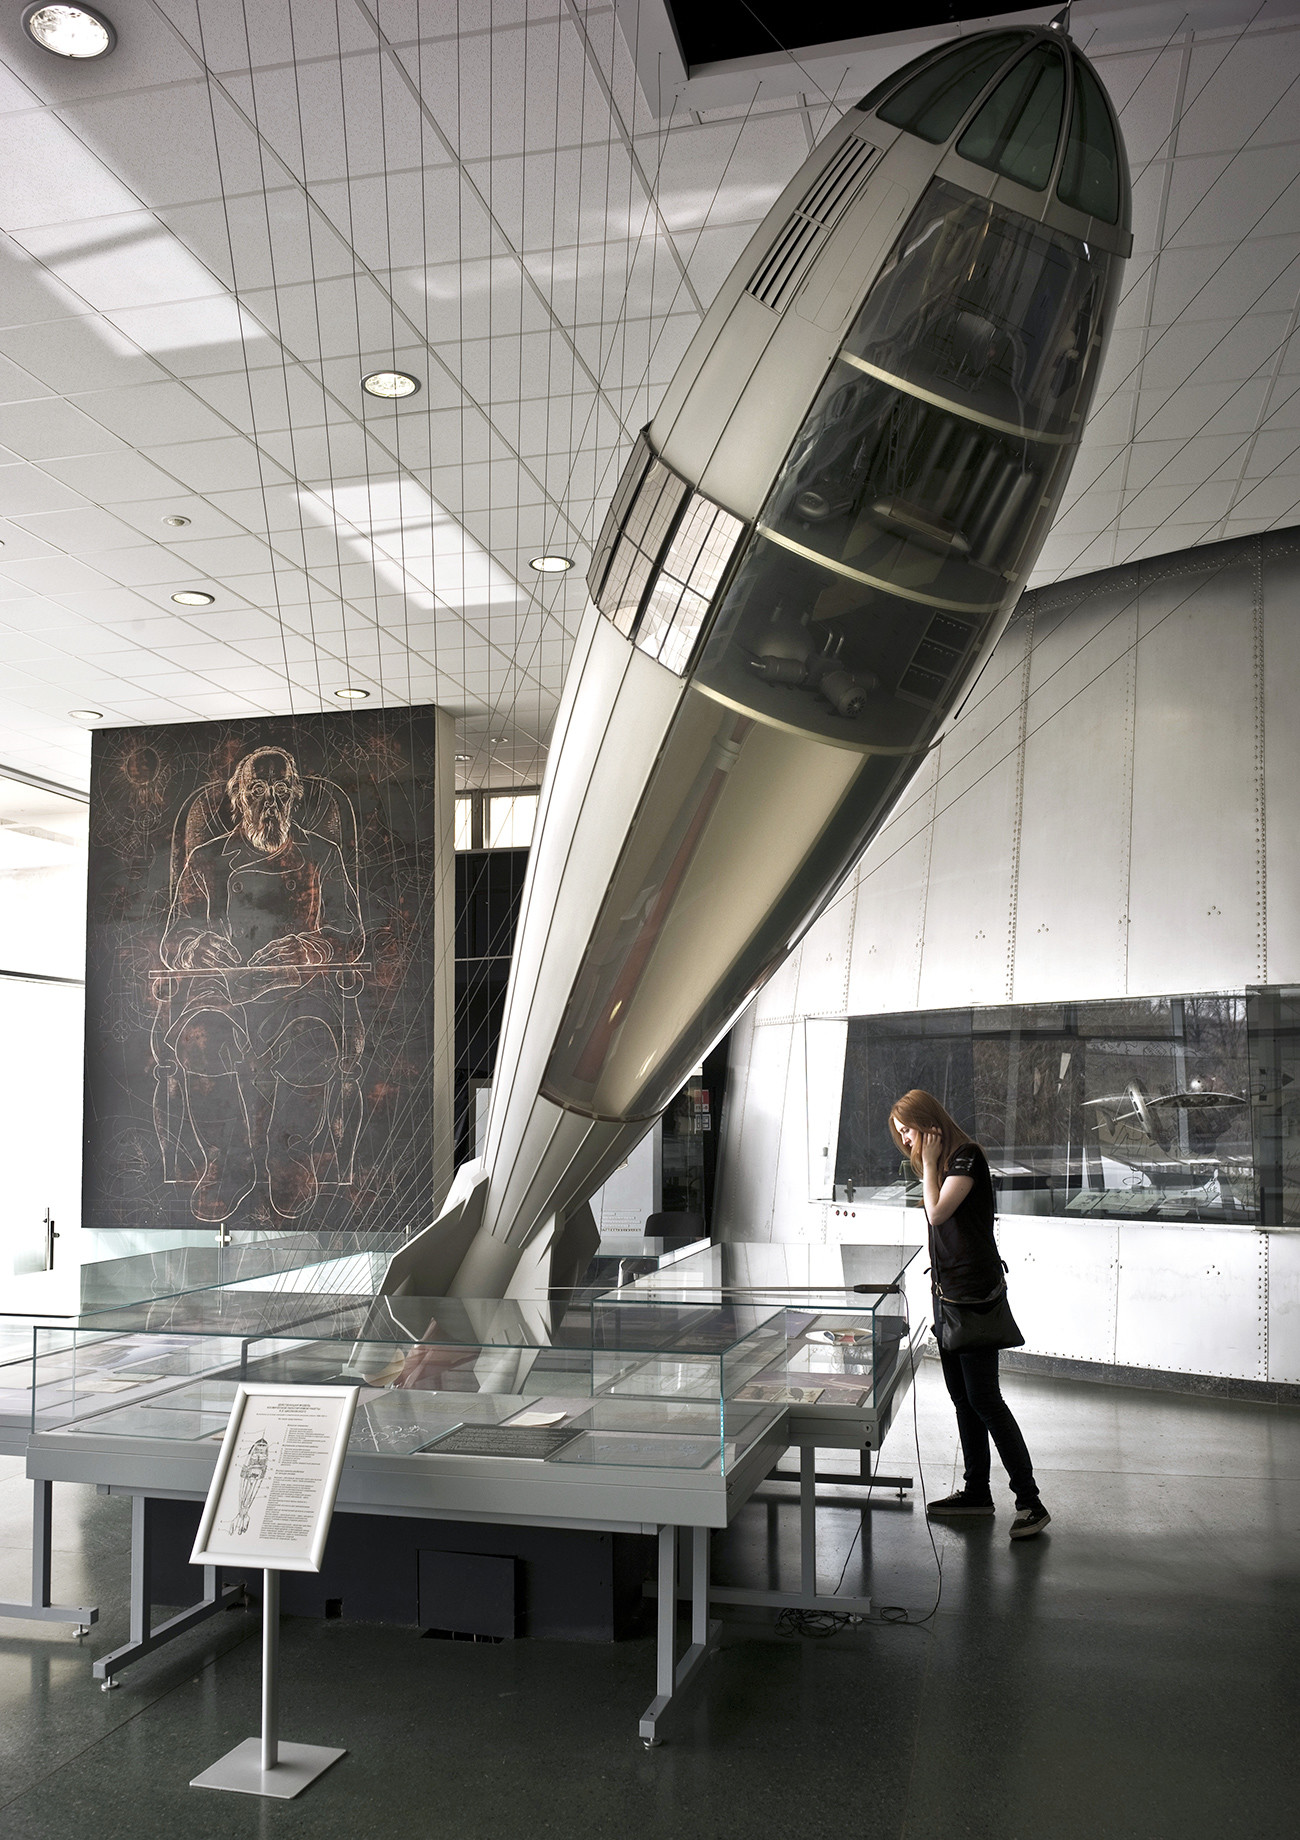 Delujoč model pilotske vesoljske rakete Konstantina Ciolkovskega v Državnem muzeju za zgodovino kozmonavtike Ciolkovskega v Kalugi